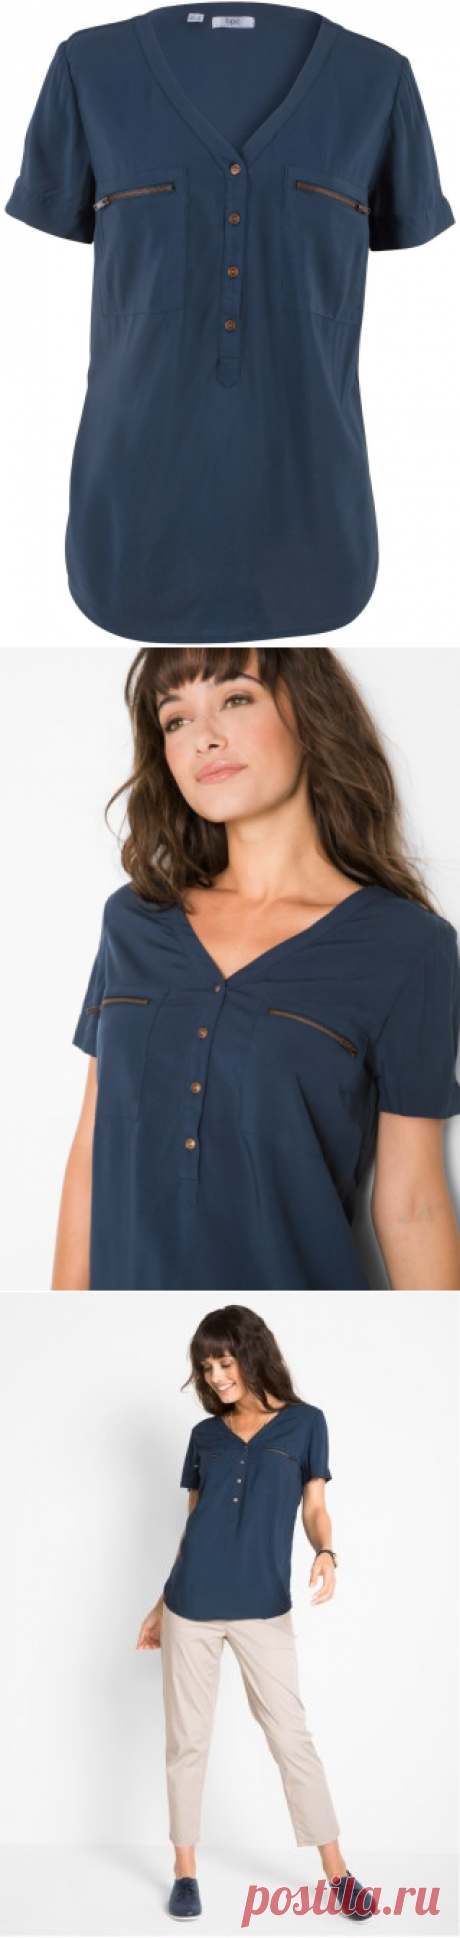 Струящаяся блузка из вискозы с V-образным вырезом и застежкой на пуговицах - темно-синий